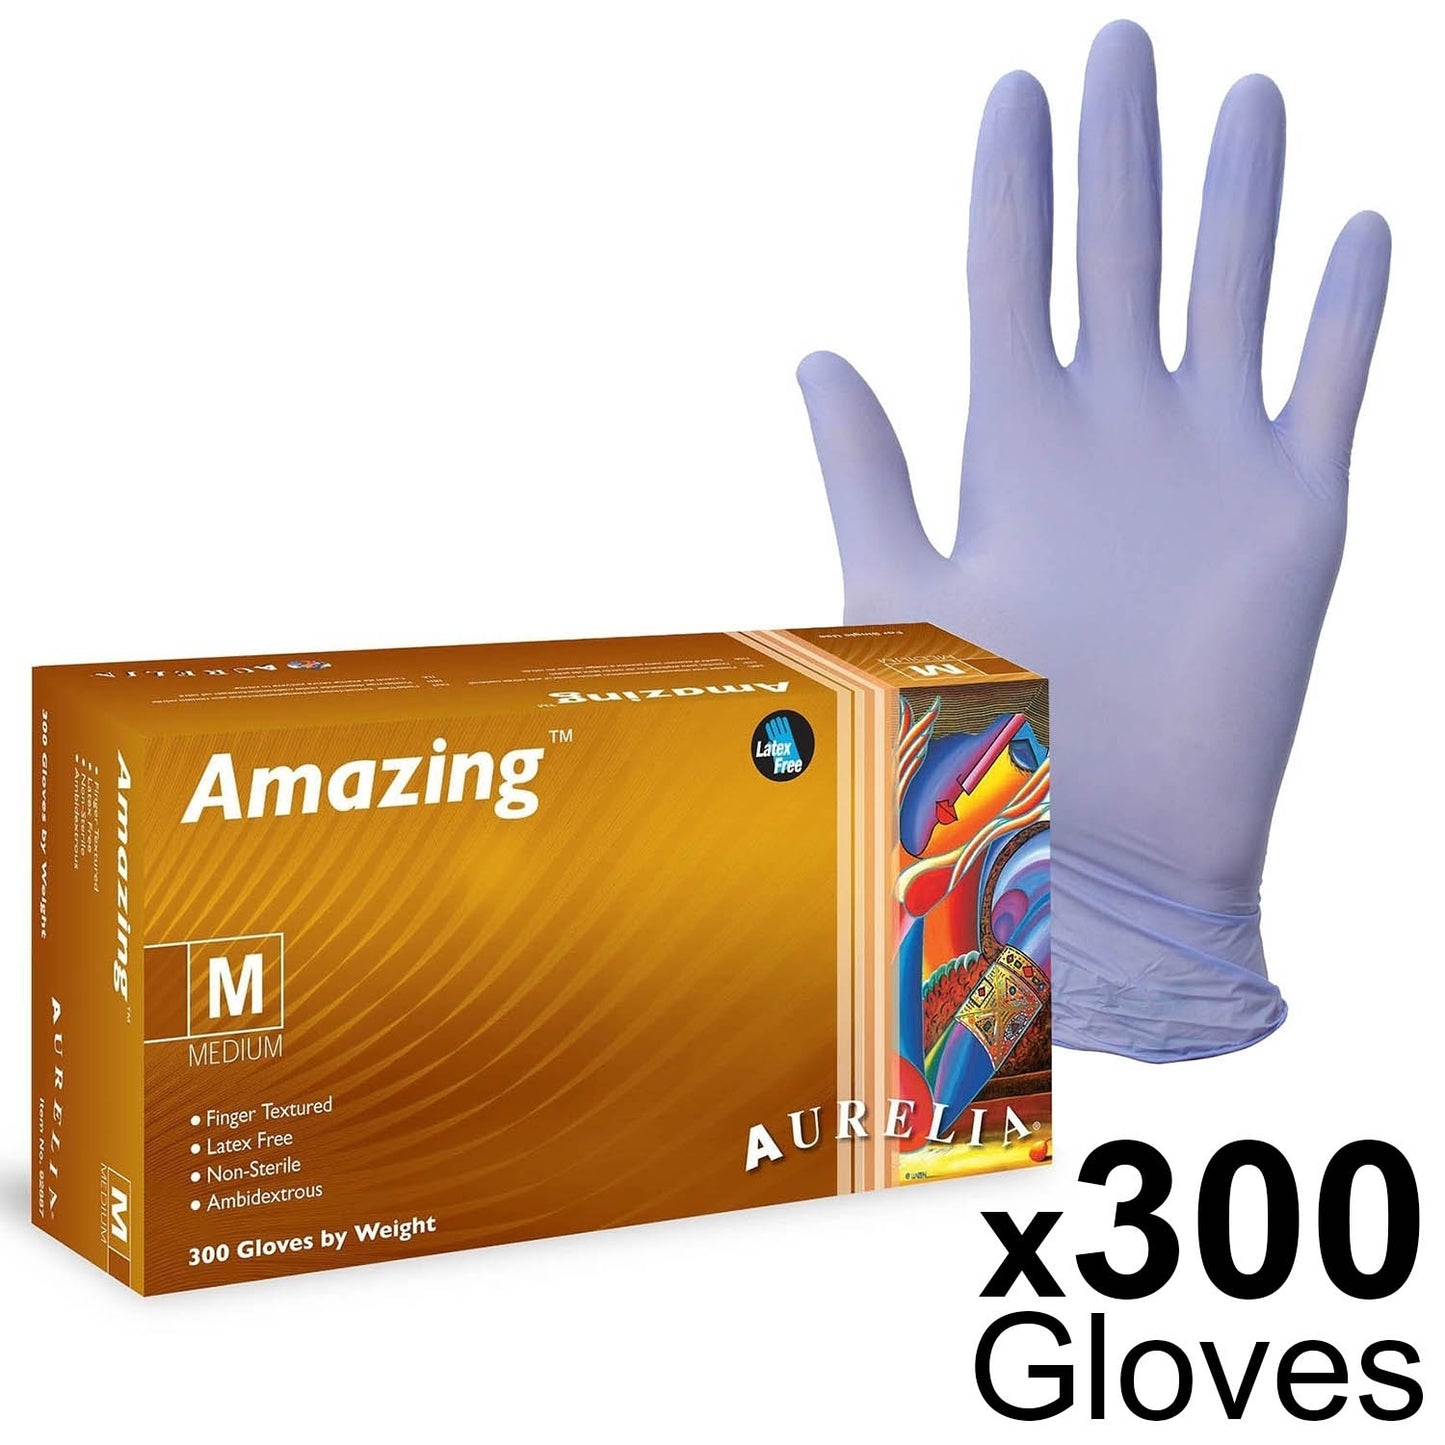 Amazing Aurelia Nitrile Powder-Free Examination Gloves - Box of 300